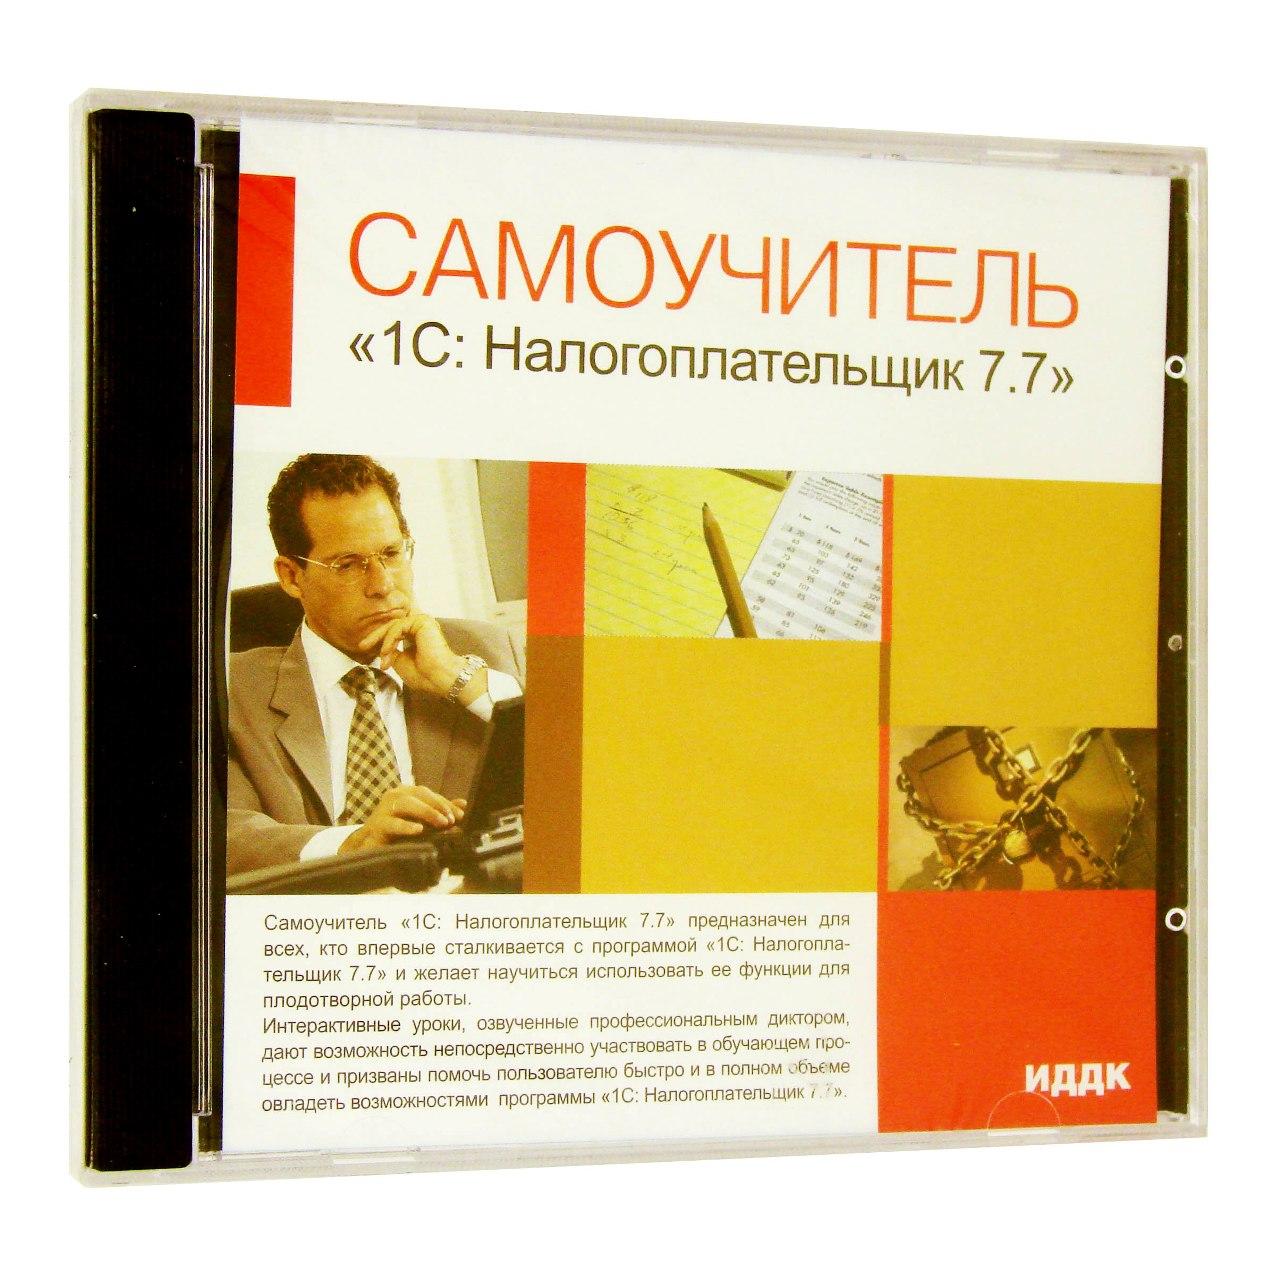 Компьютерный компакт-диск Самоучитель 1С: Налогоплательщик 7.7 (ПК), фирма "ИДДК", 1CD